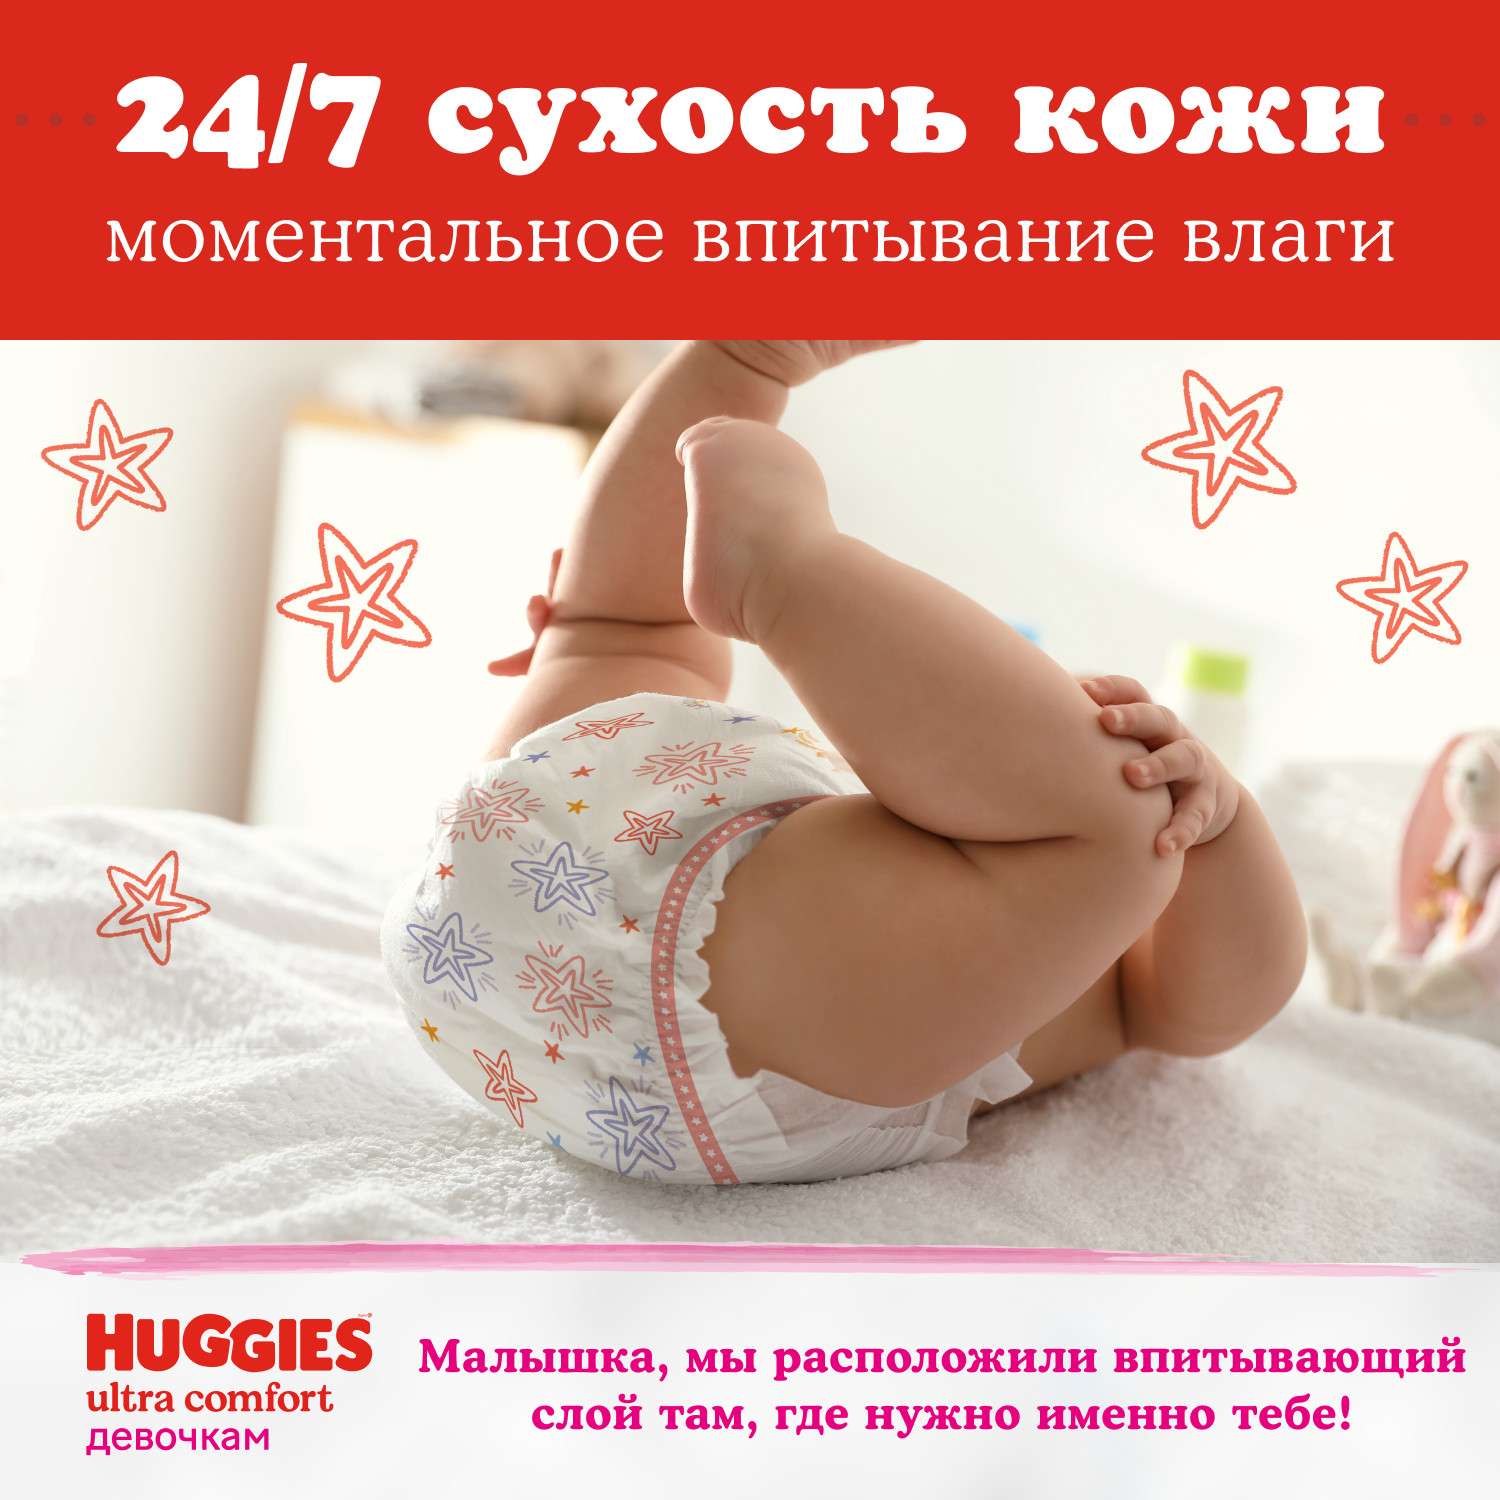 Подгузники для девочек Huggies Ultra Comfort 4 8-14кг 19шт - фото 5